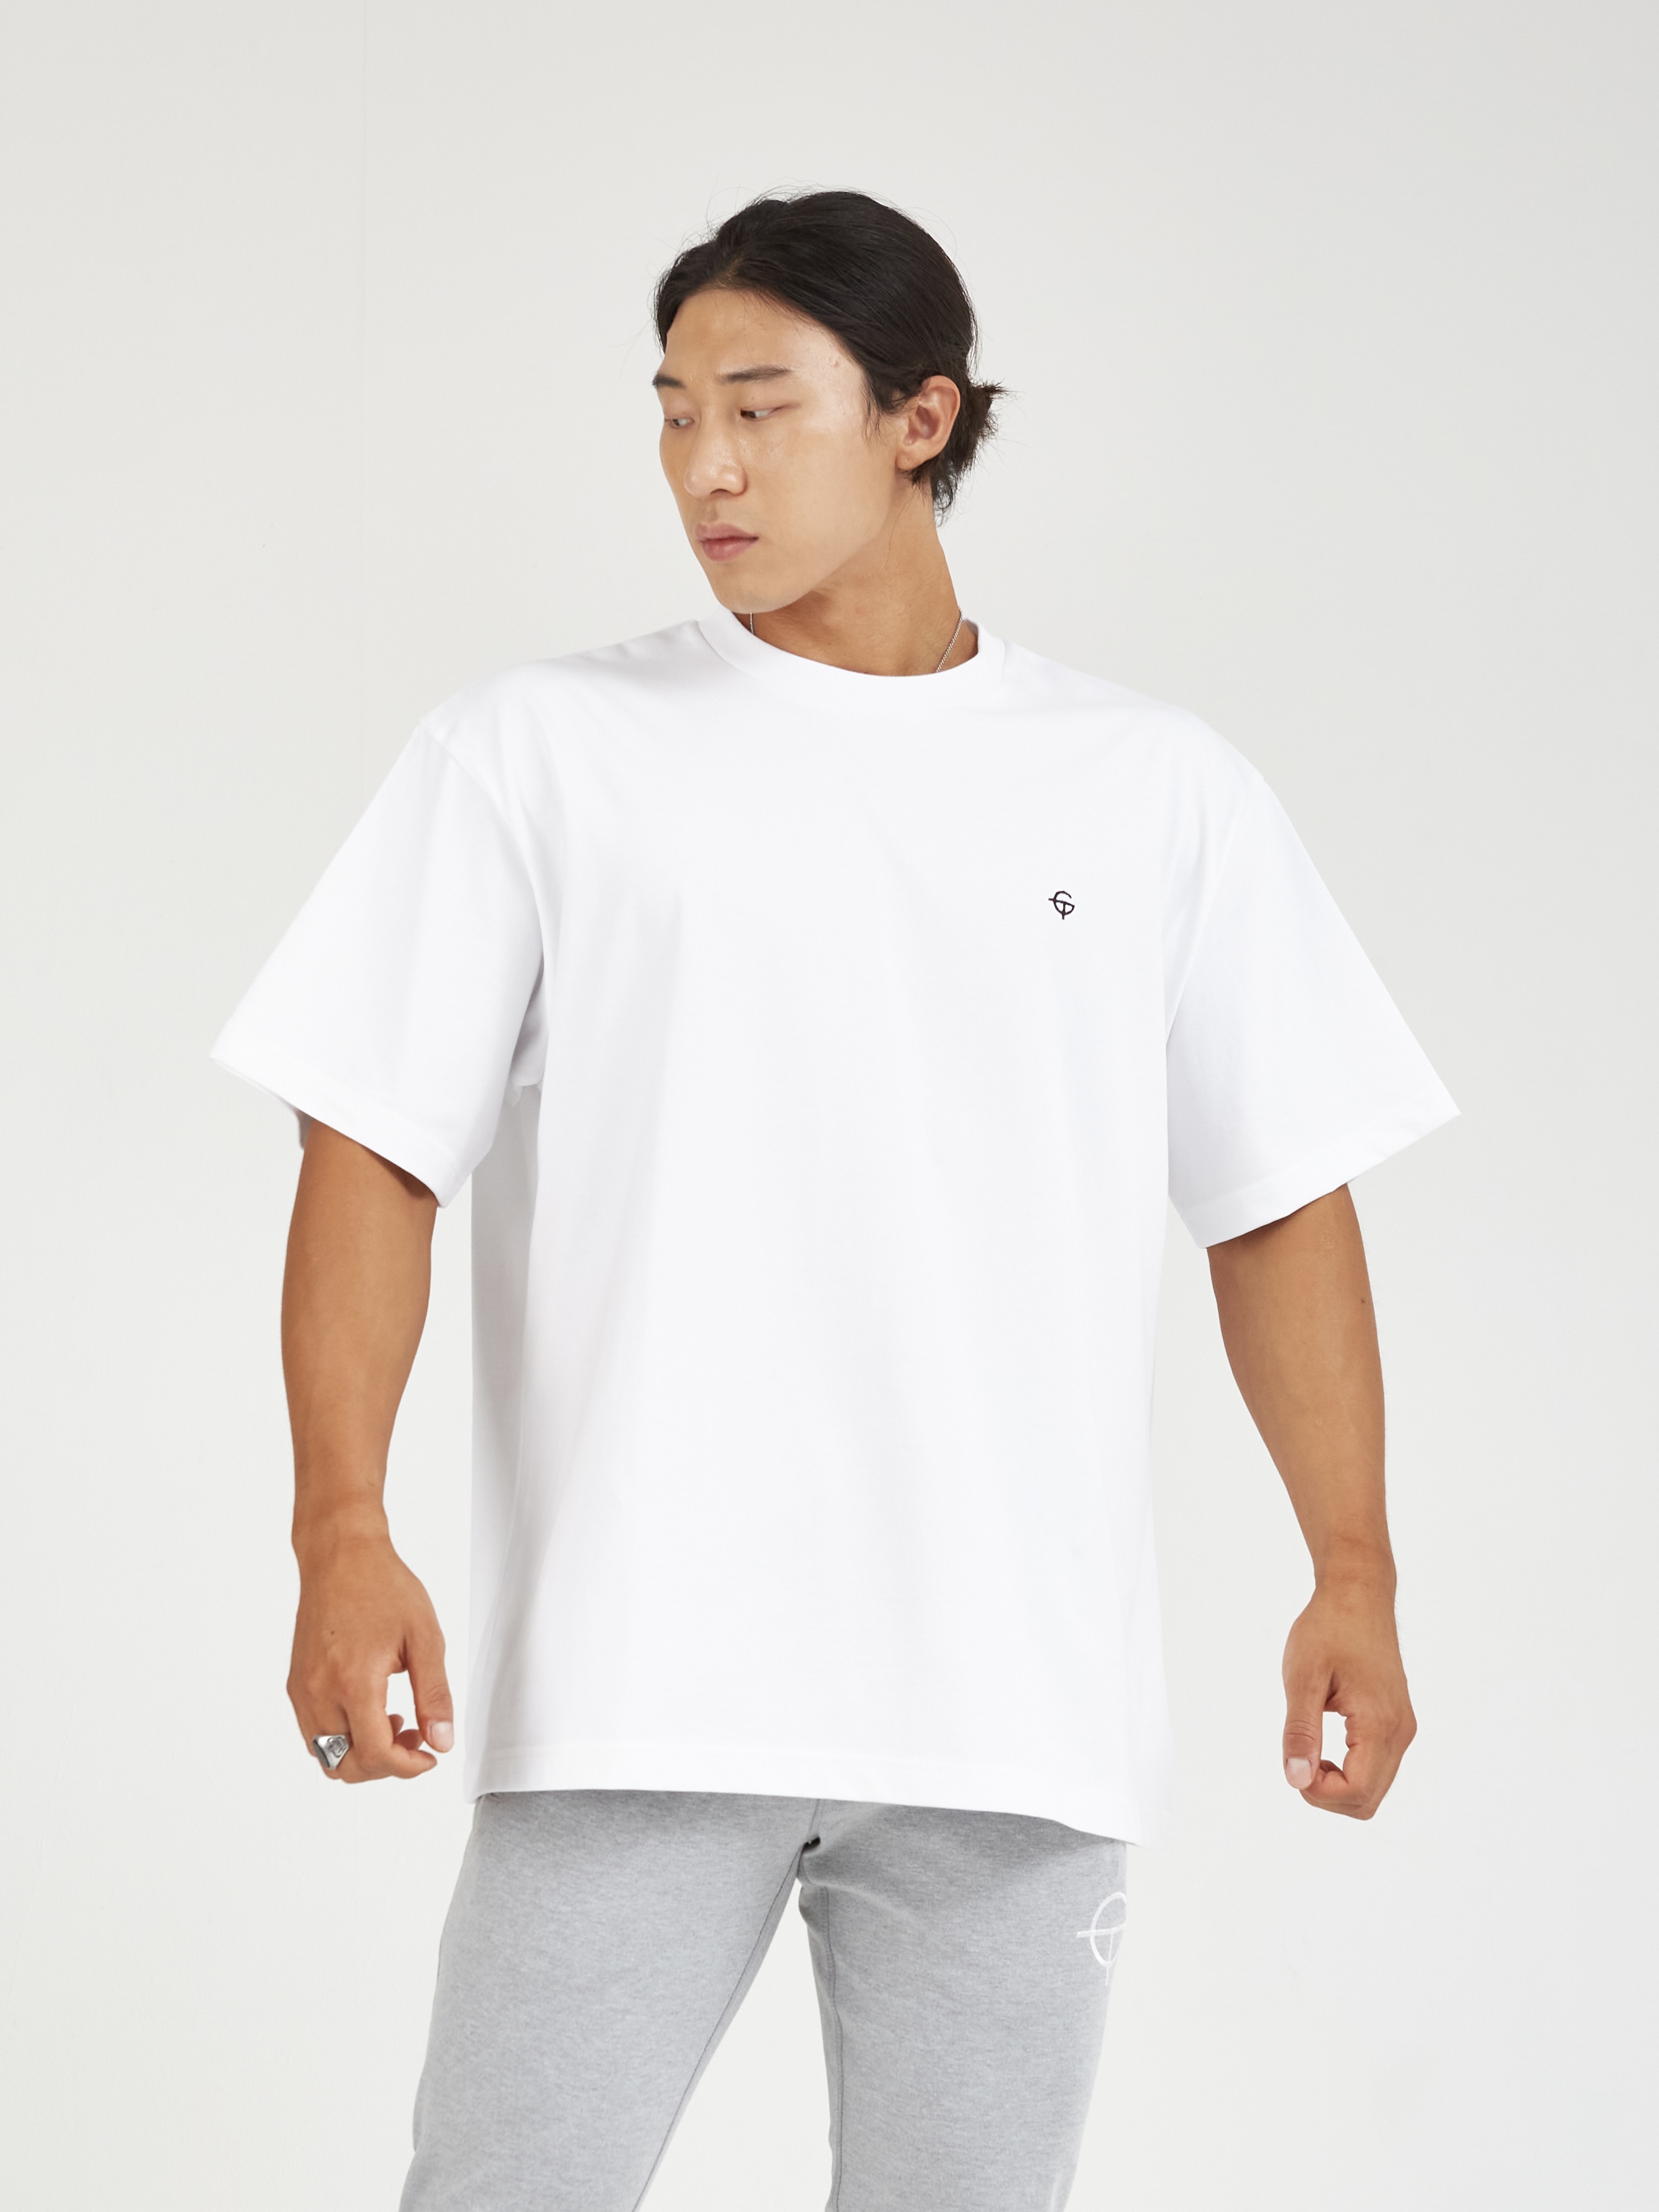 GHOSTTOWN GT 에센셜 피그먼트 세미 오버핏 티셔츠 화이트 - 고스트타운